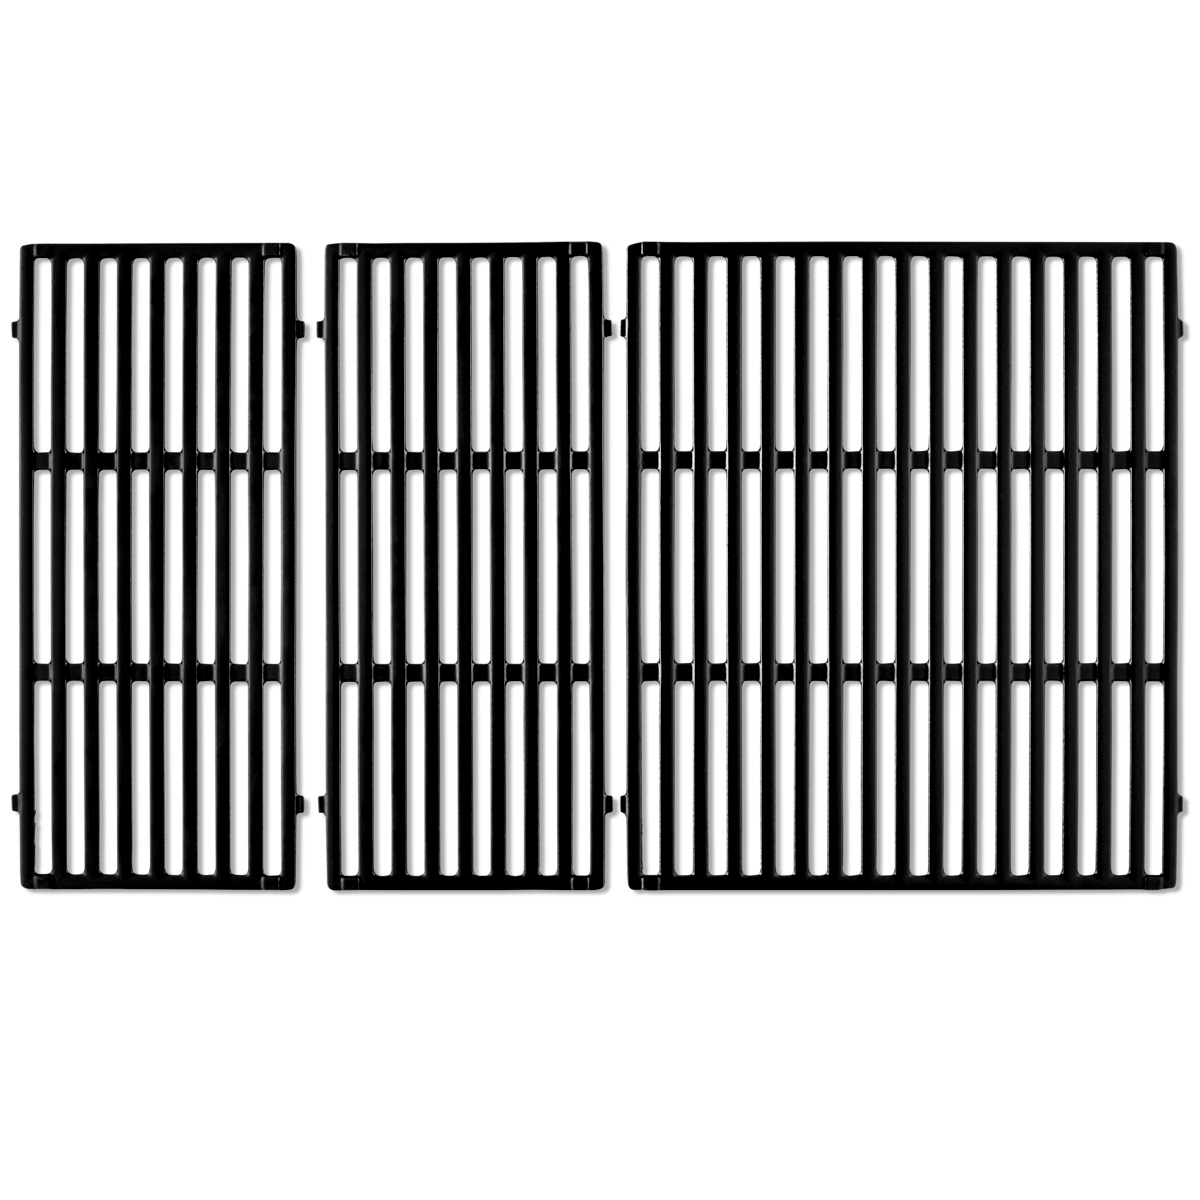 Фарфоровая эмалированная чугунная решетка Weber Crafted для гриля Genesis Series 400 черная (7854) фото 